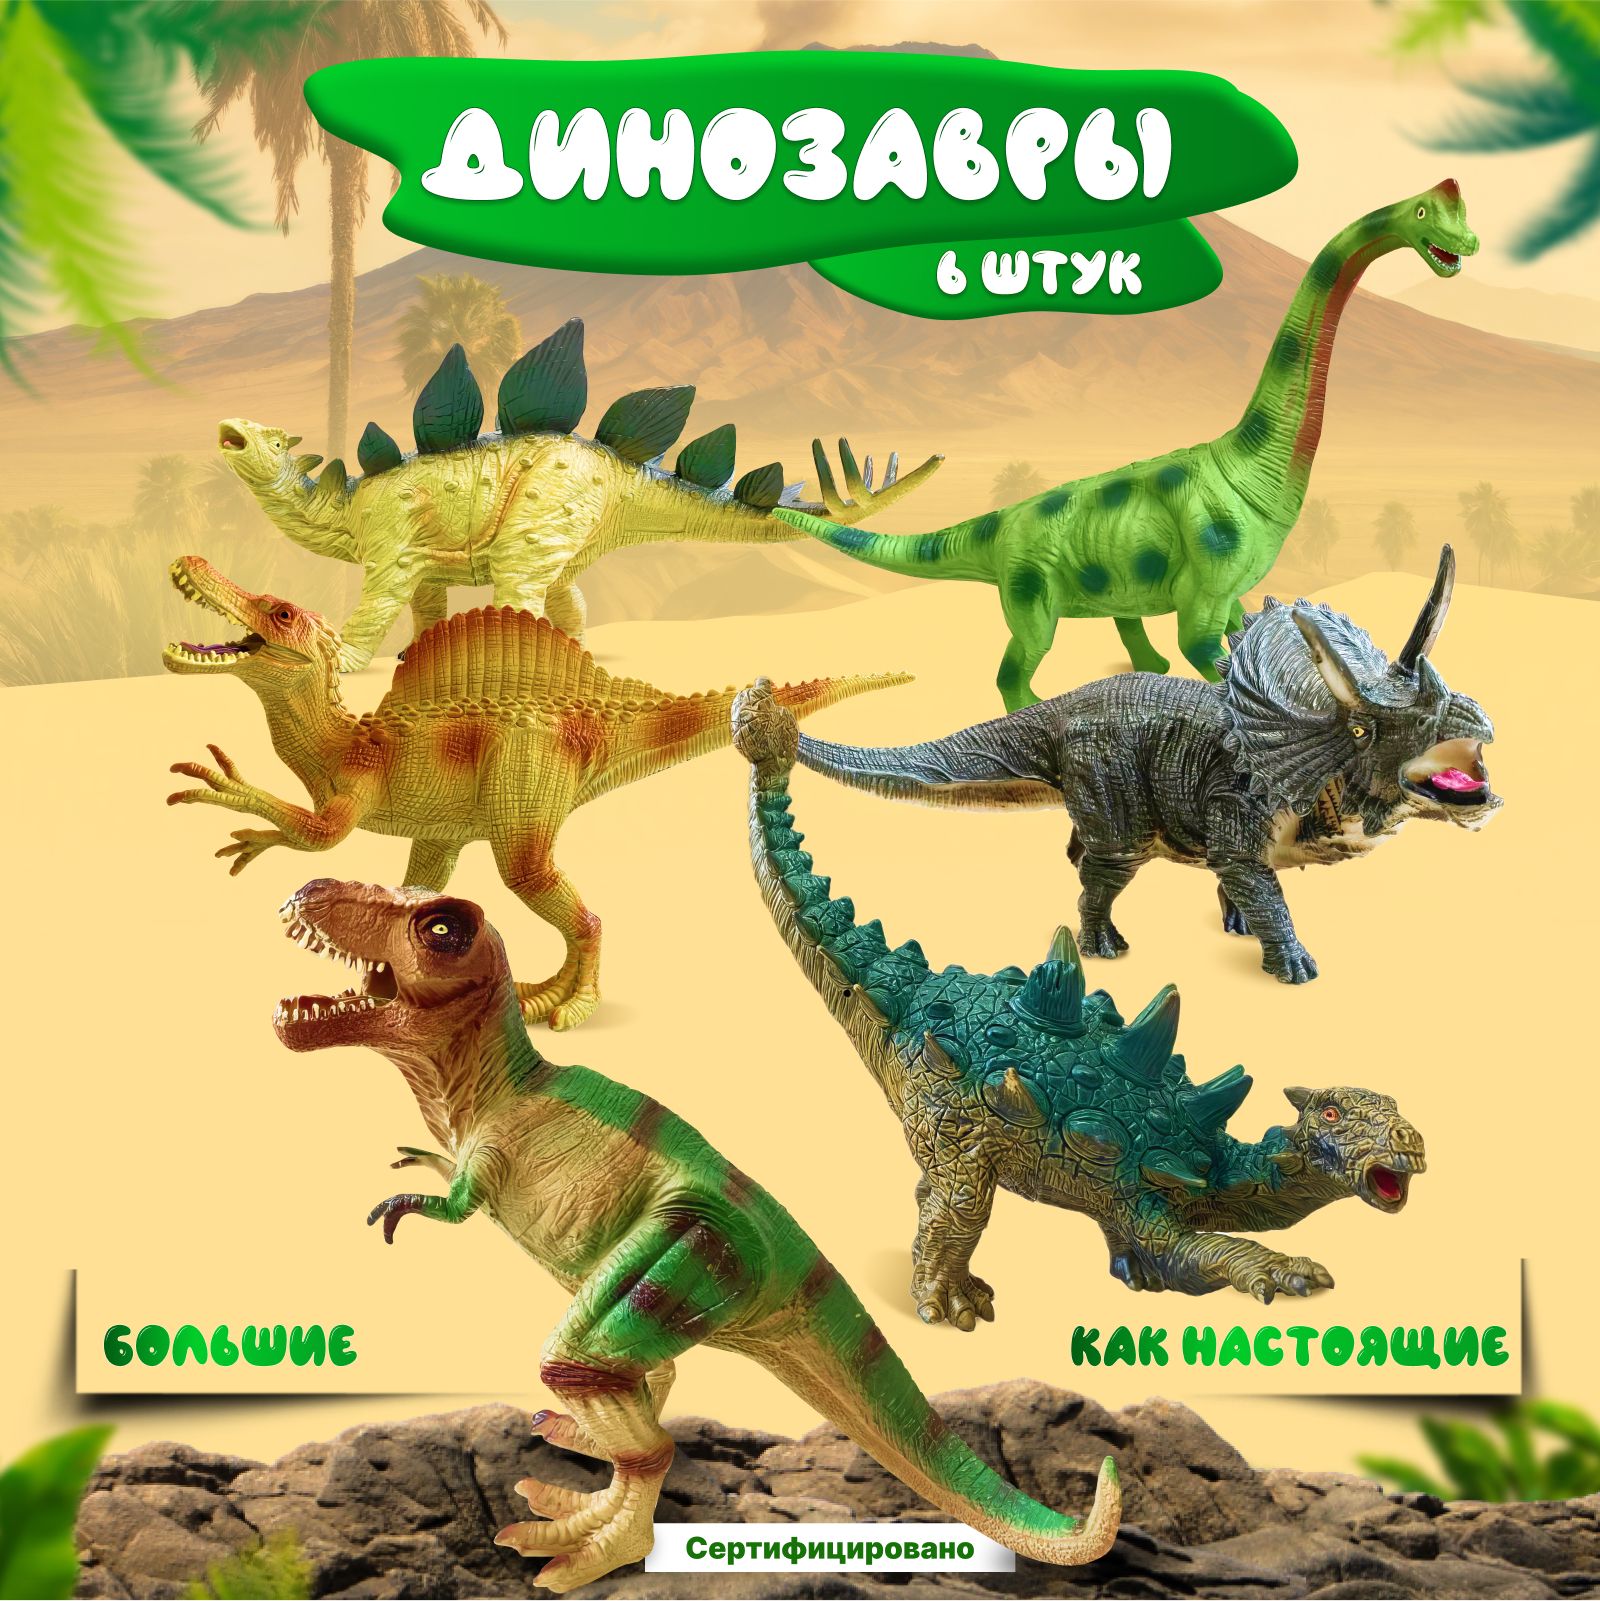 Динозаврыфигуркибольшиенаборигрушкидинозаврикидлядетей6шт